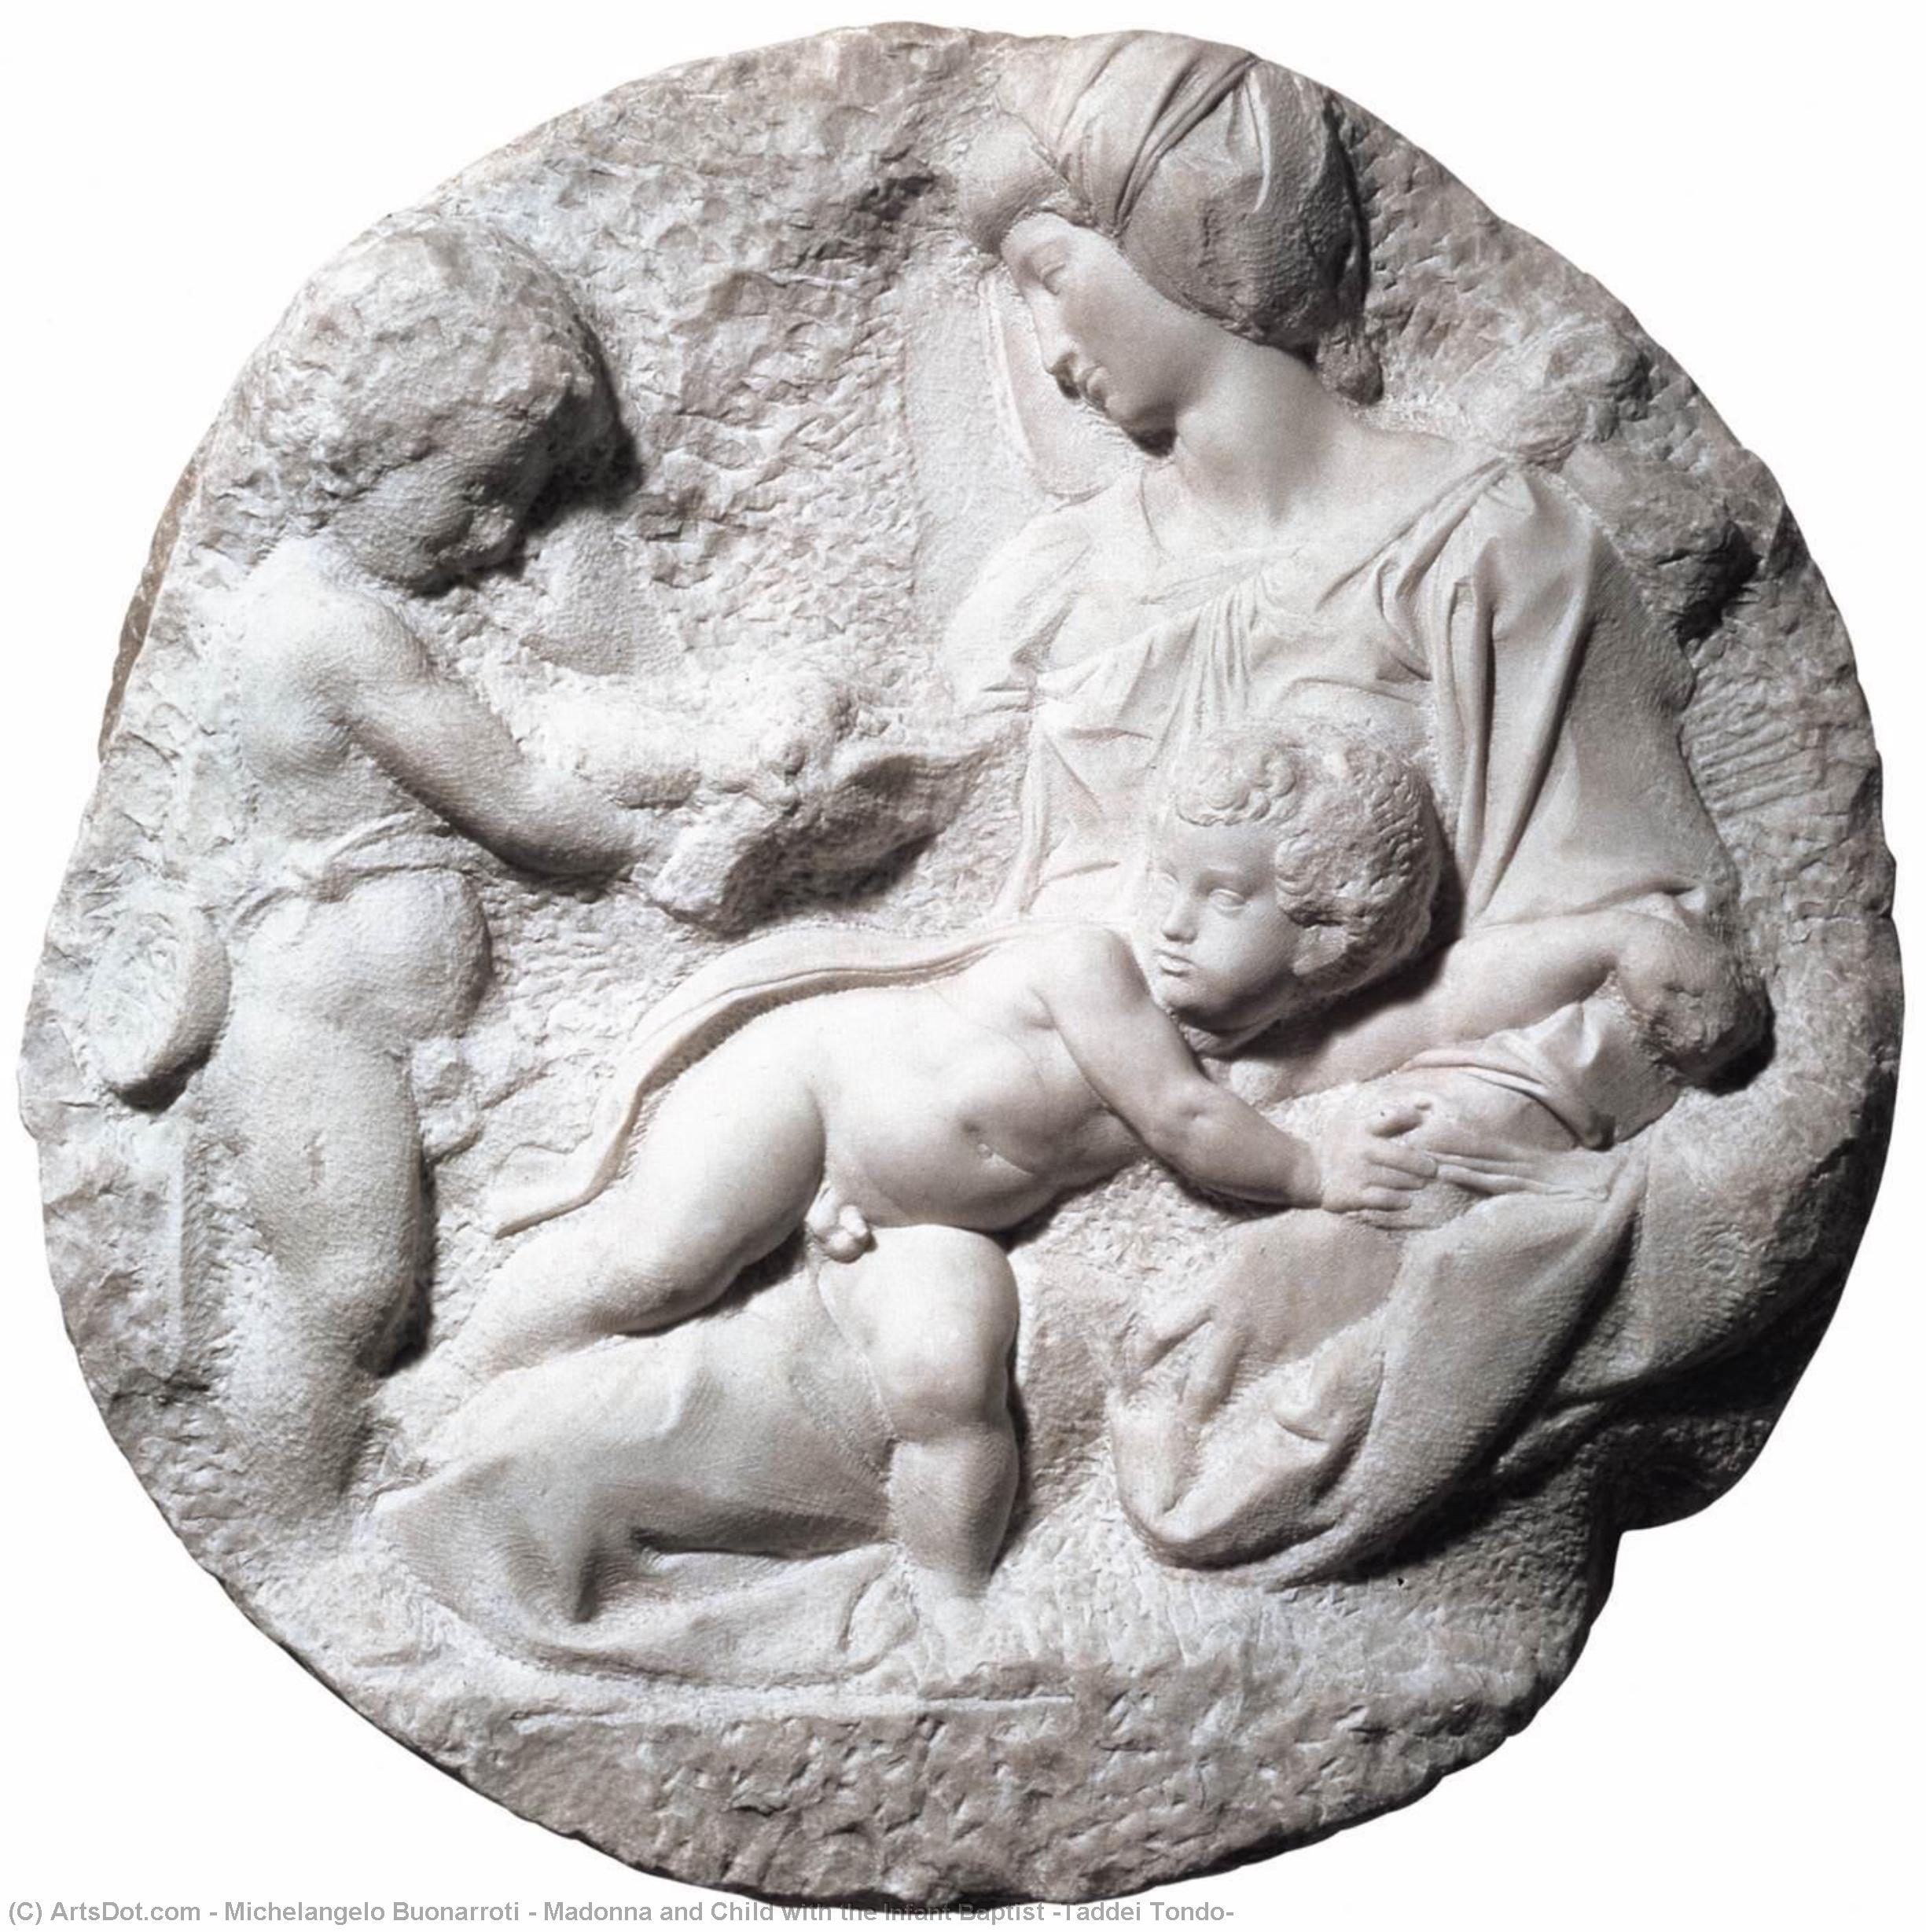 WikiOO.org - Enciklopedija likovnih umjetnosti - Slikarstvo, umjetnička djela Michelangelo Buonarroti - Madonna and Child with the Infant Baptist (Taddei Tondo)